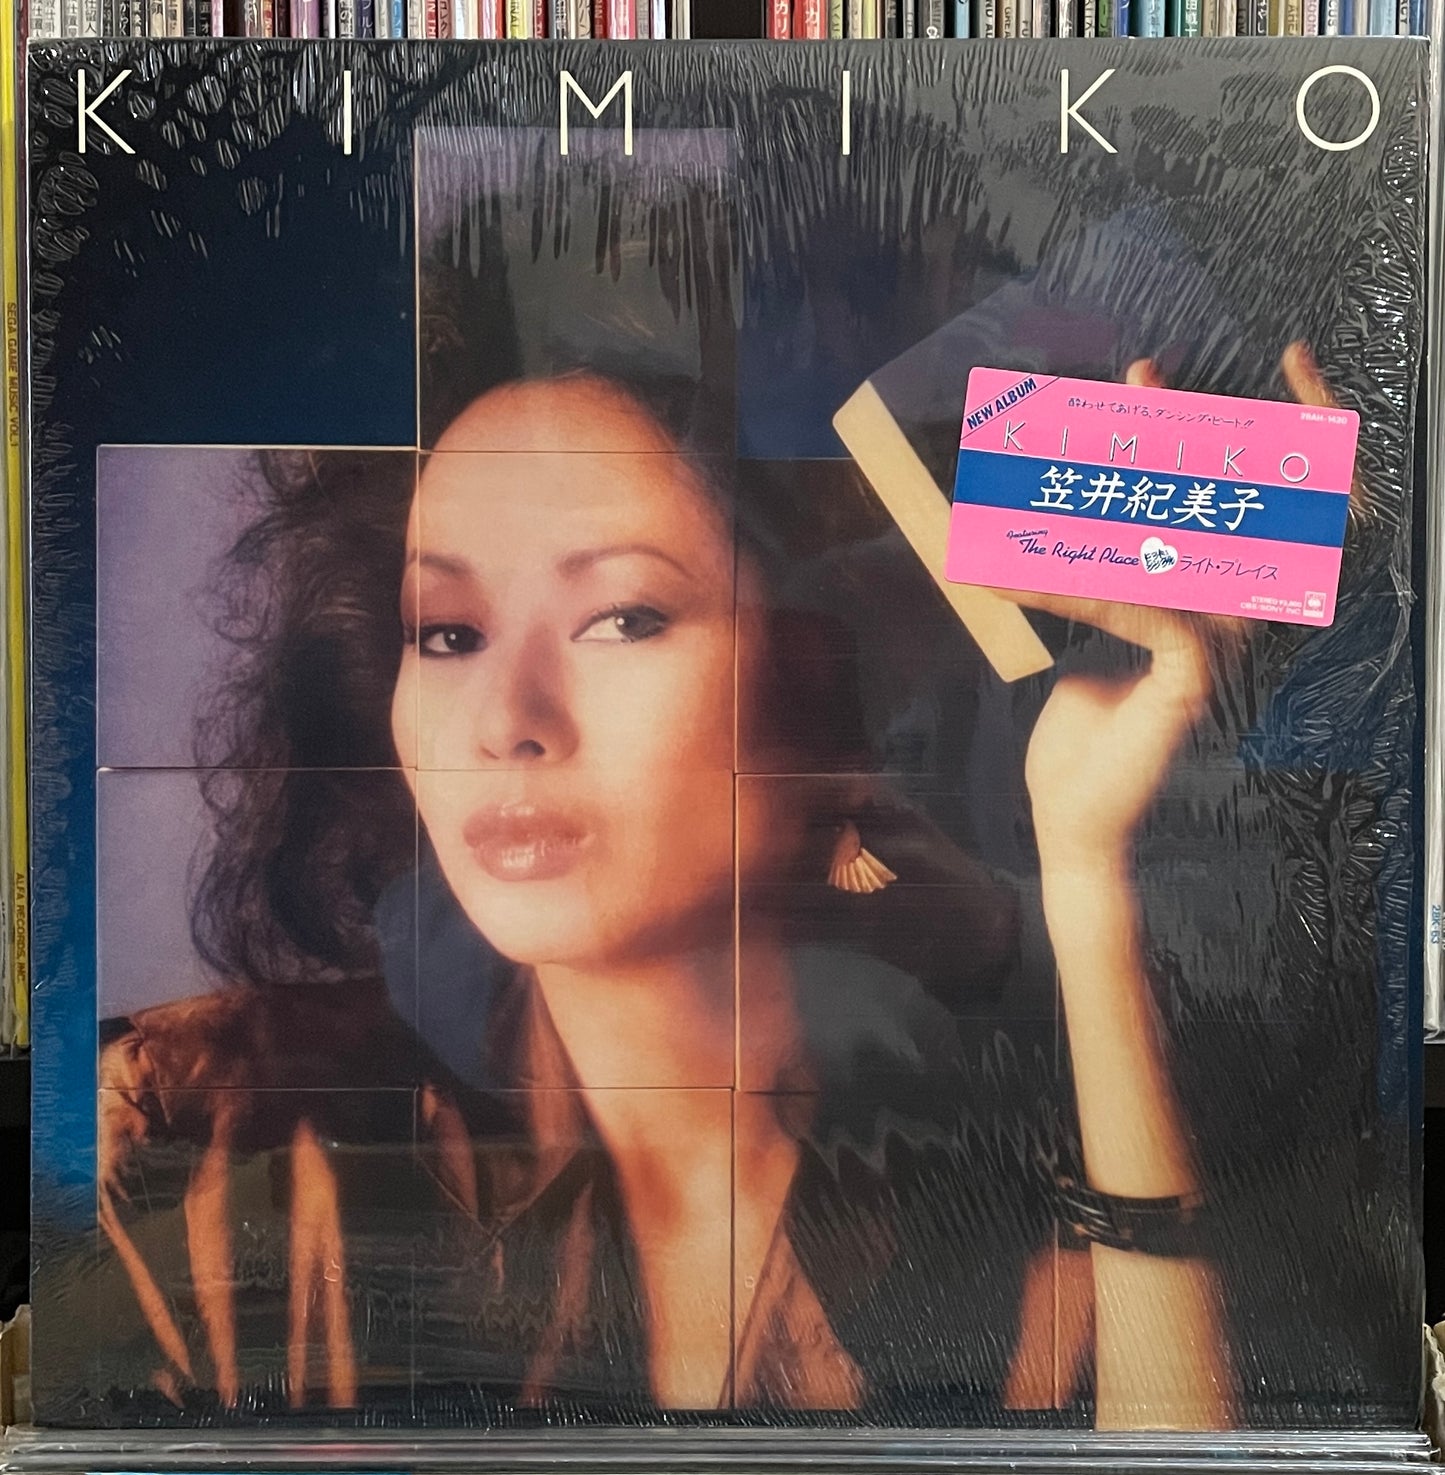 Kimiko Kasai “Kimiko” (1982)